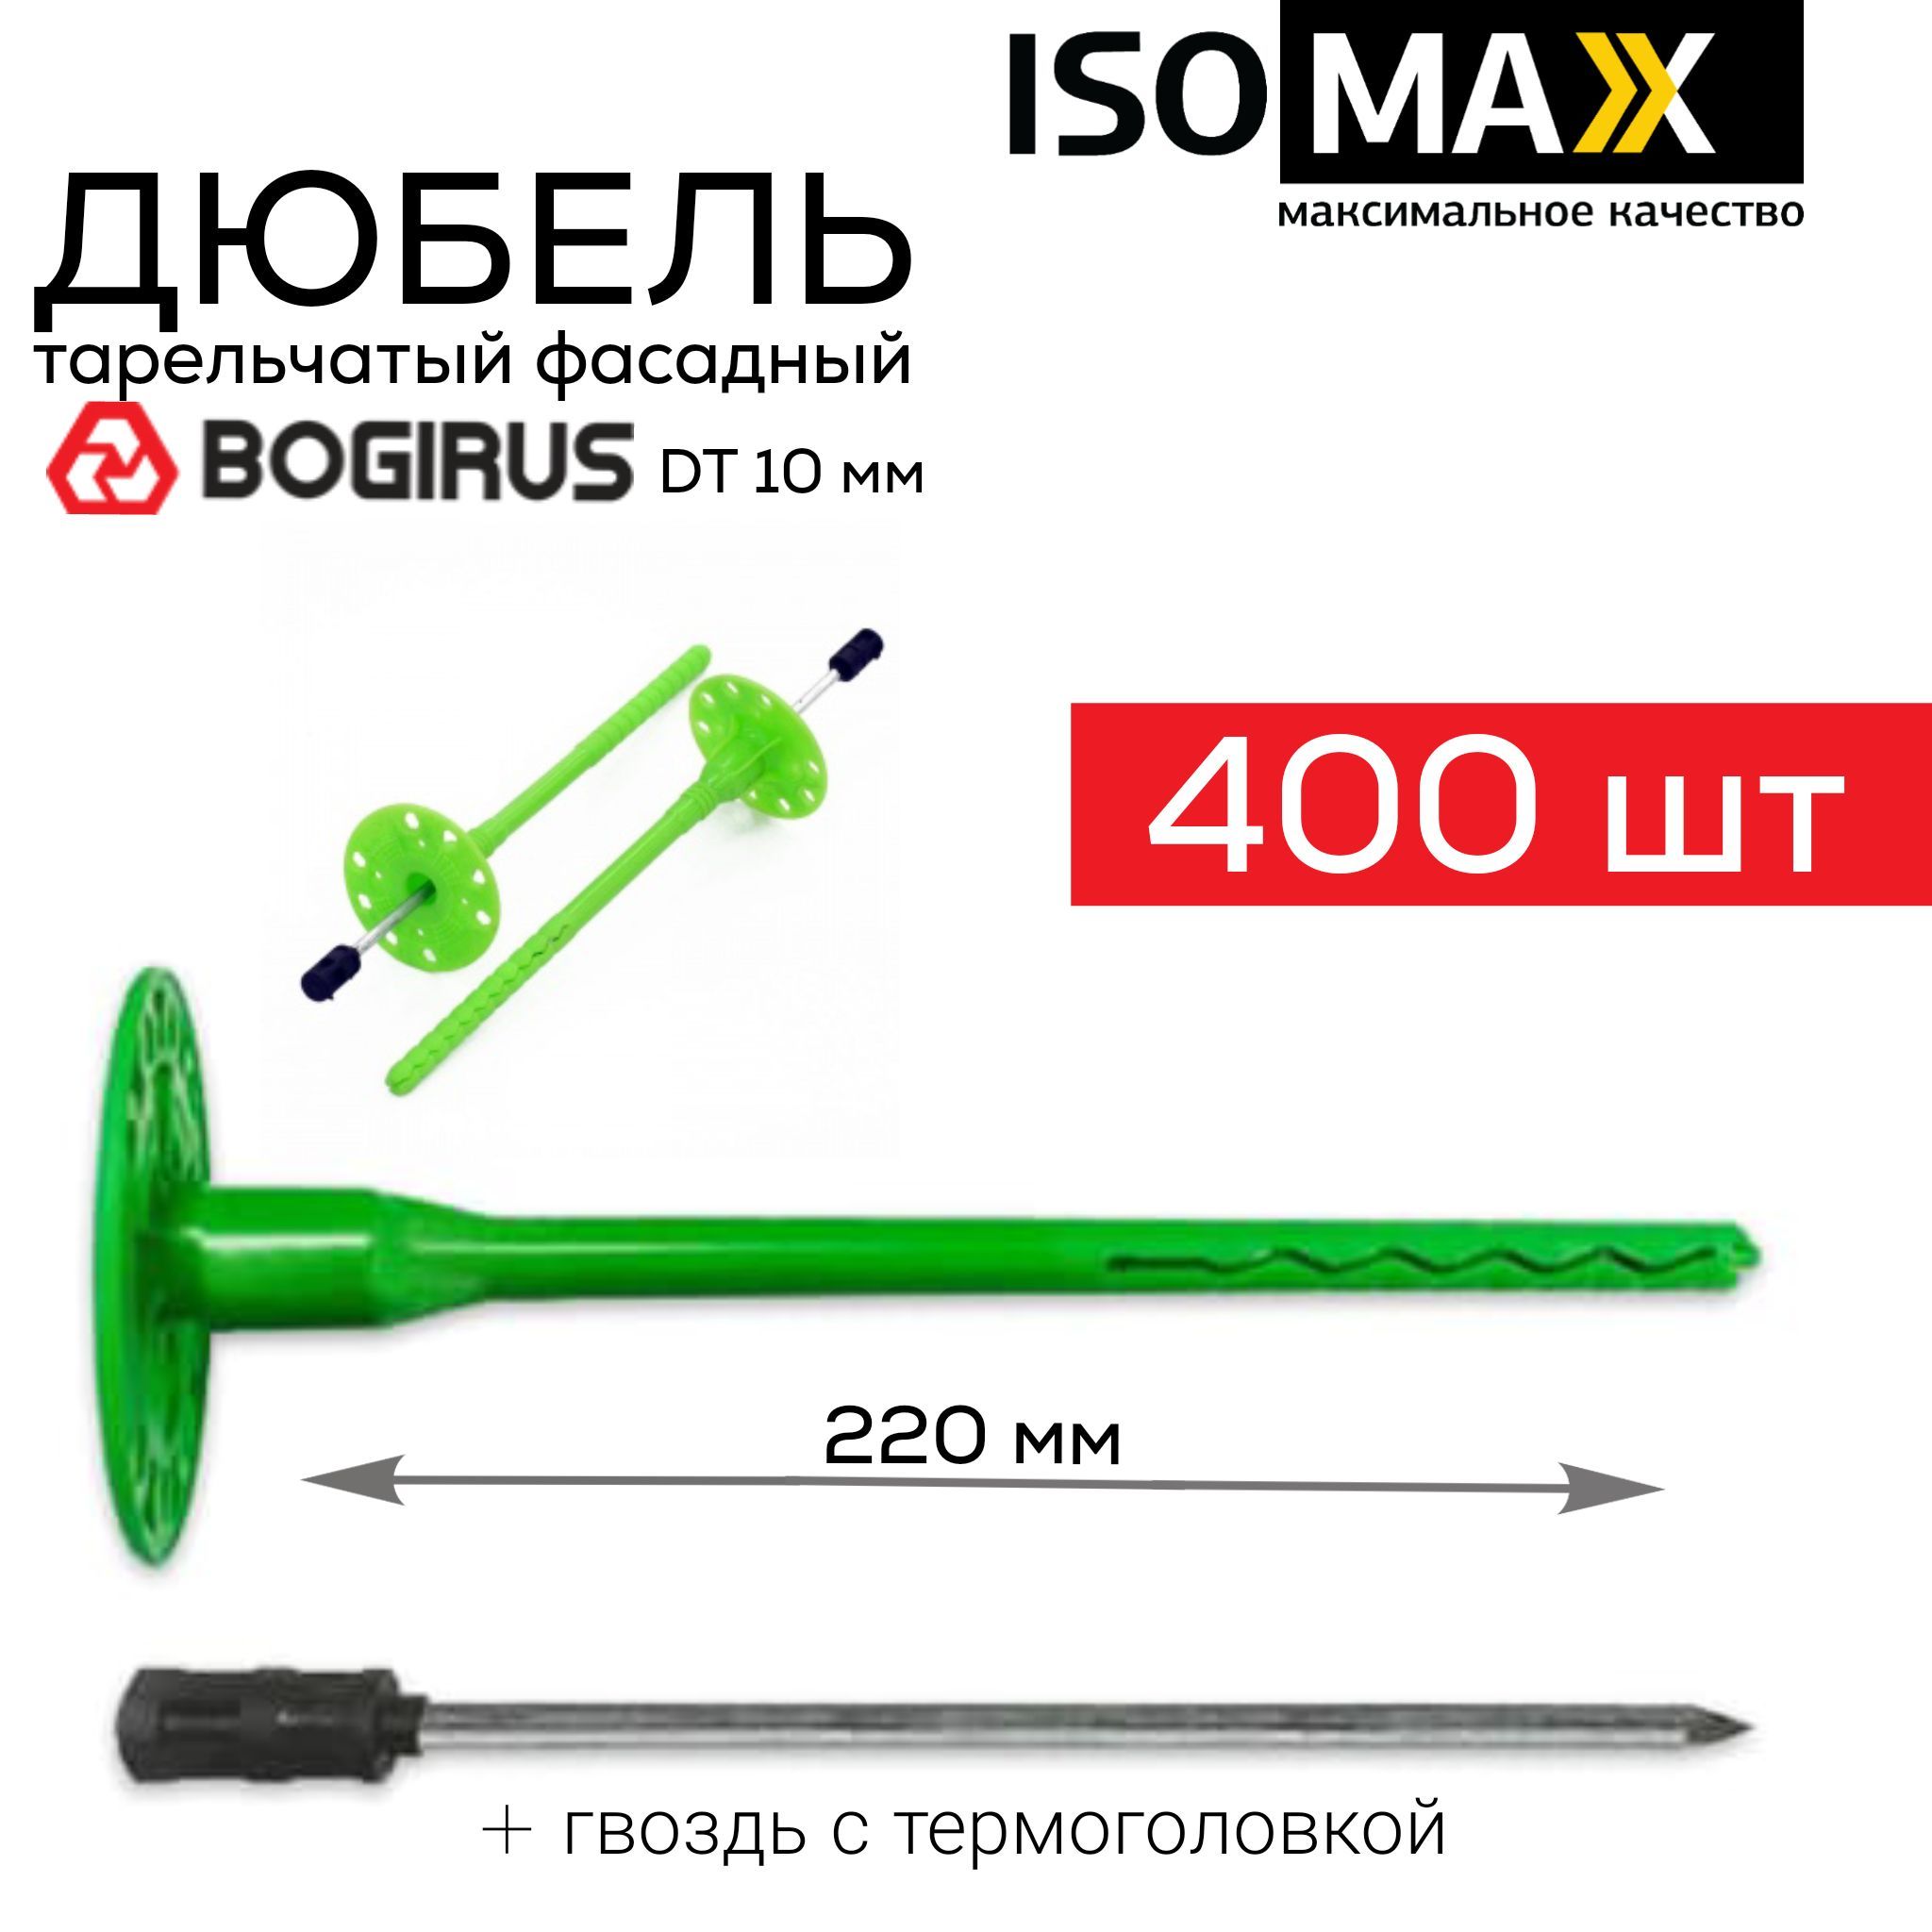 Дюбель для теплоизоляции, Isomax, DT10, 220 мм, 400 шт, с гвоздем.